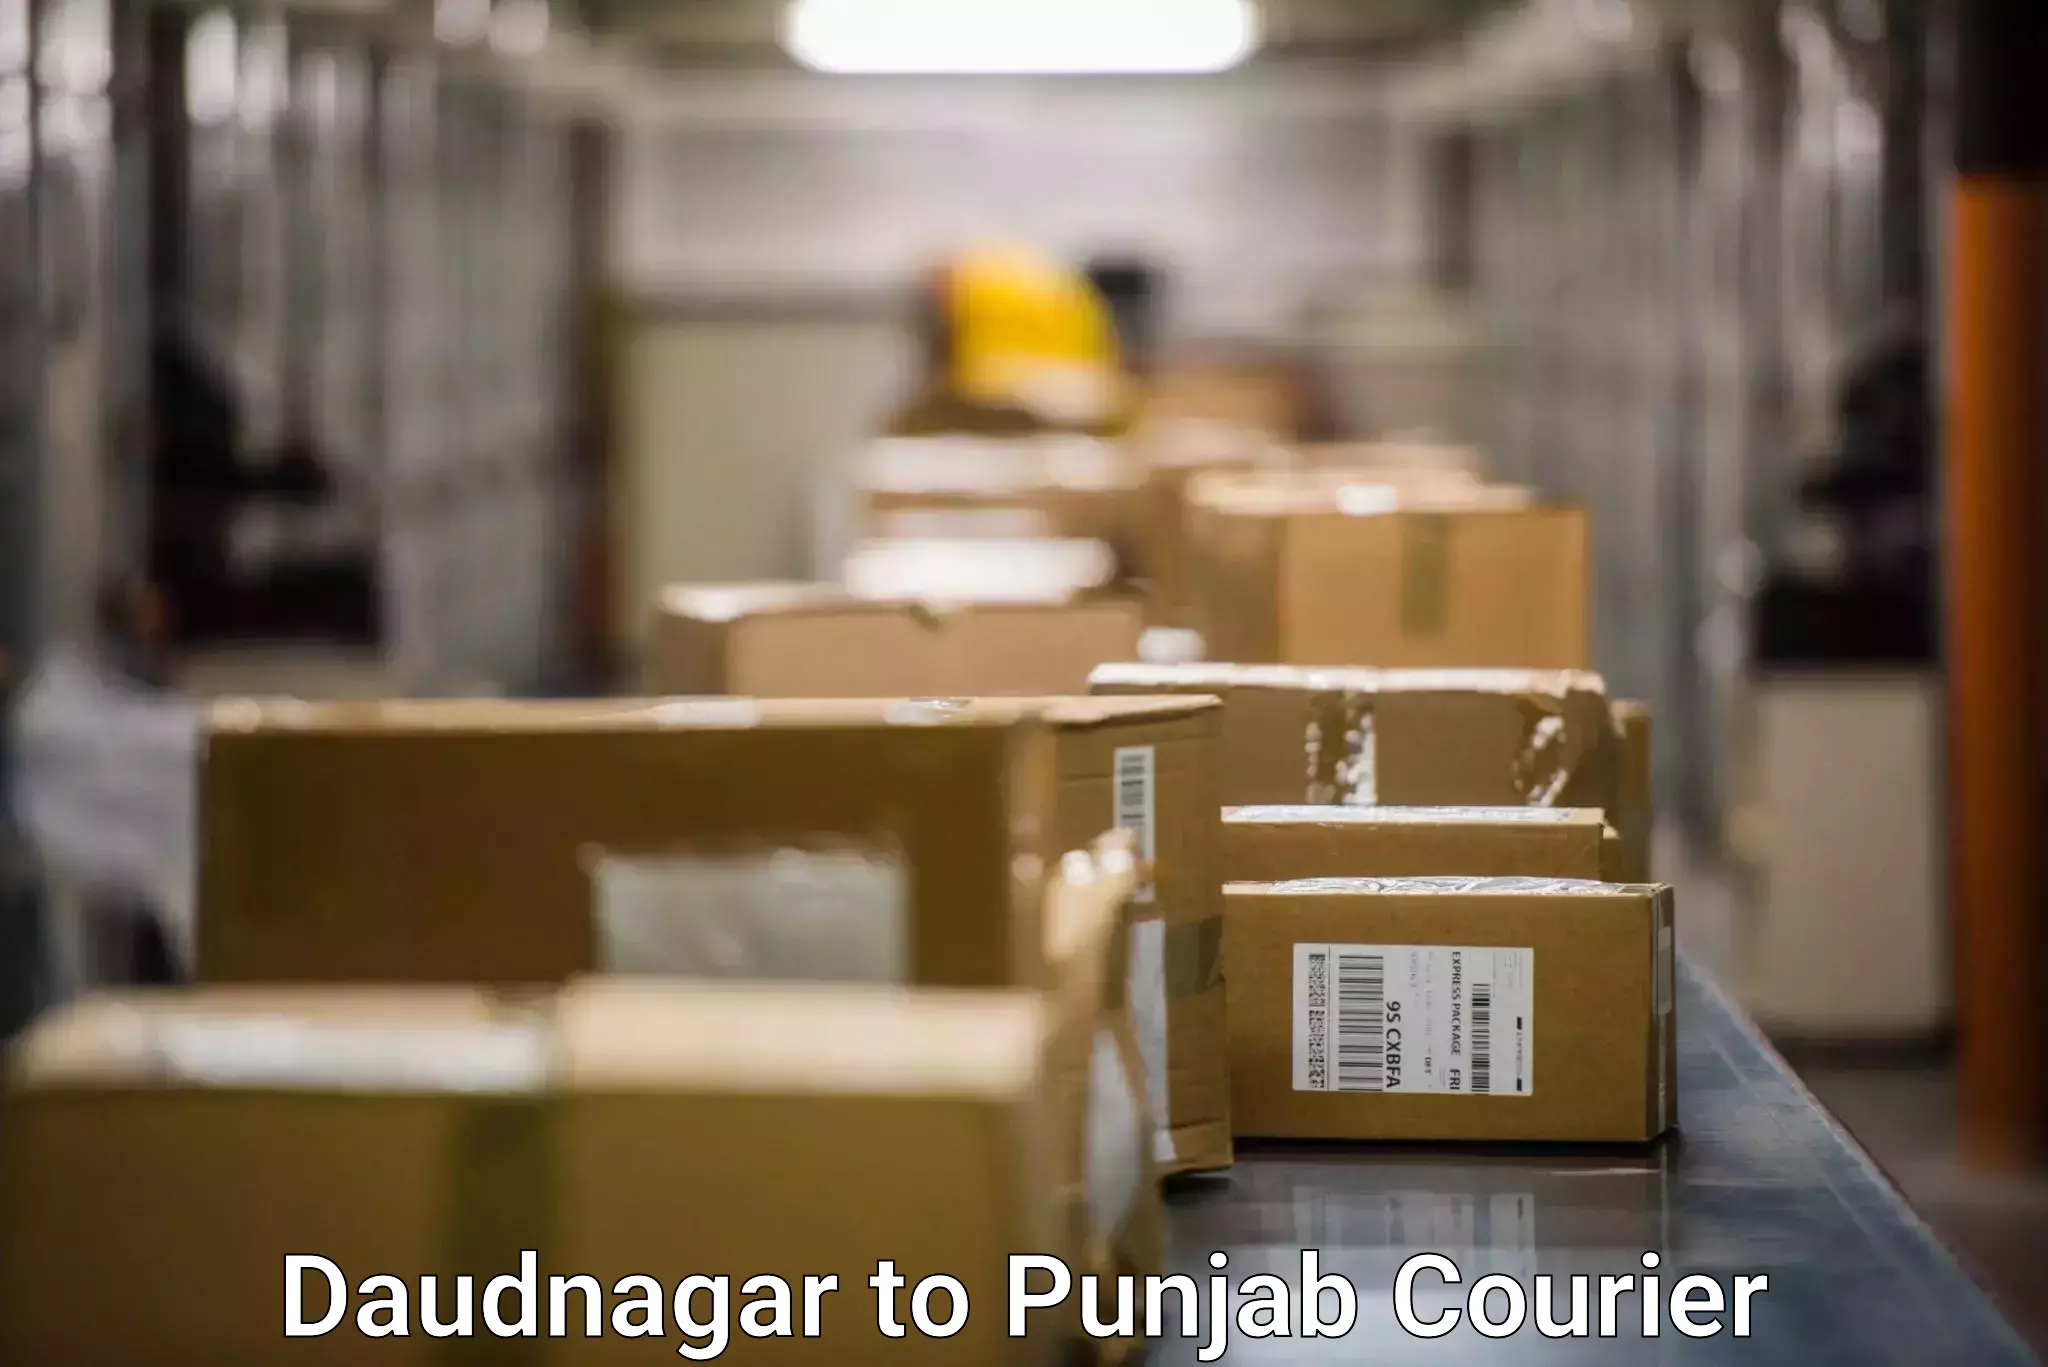 Courier service efficiency Daudnagar to Firozpur